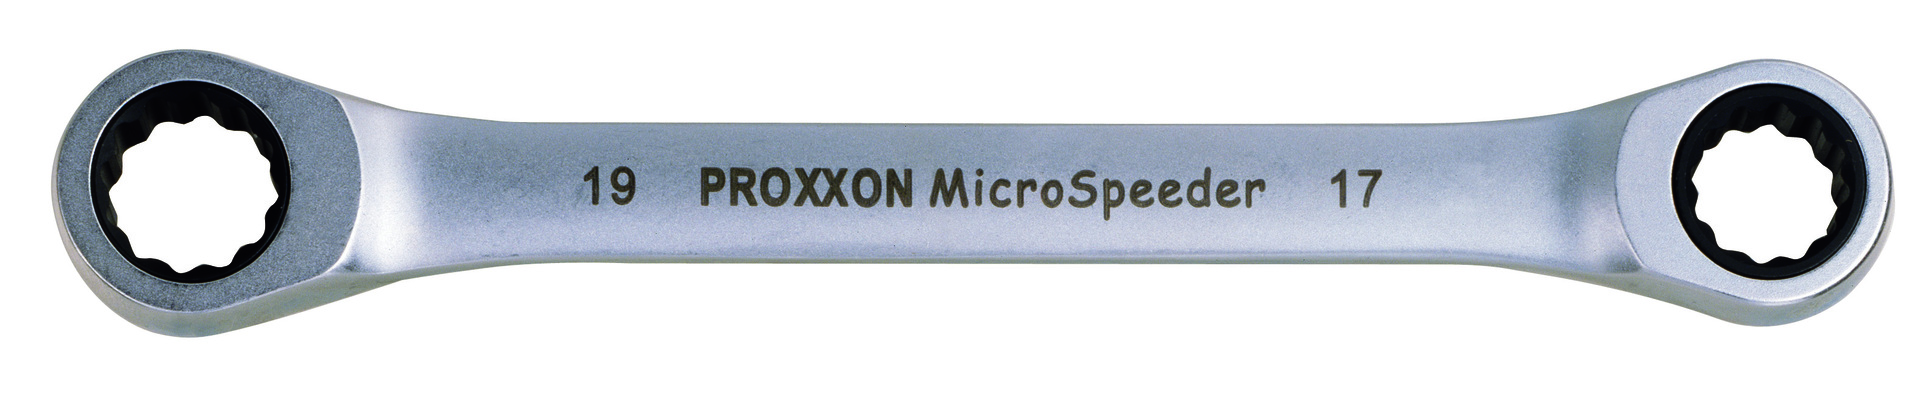 Proxxon Micro-Speeder Ratschenschlüssel 10x13mm